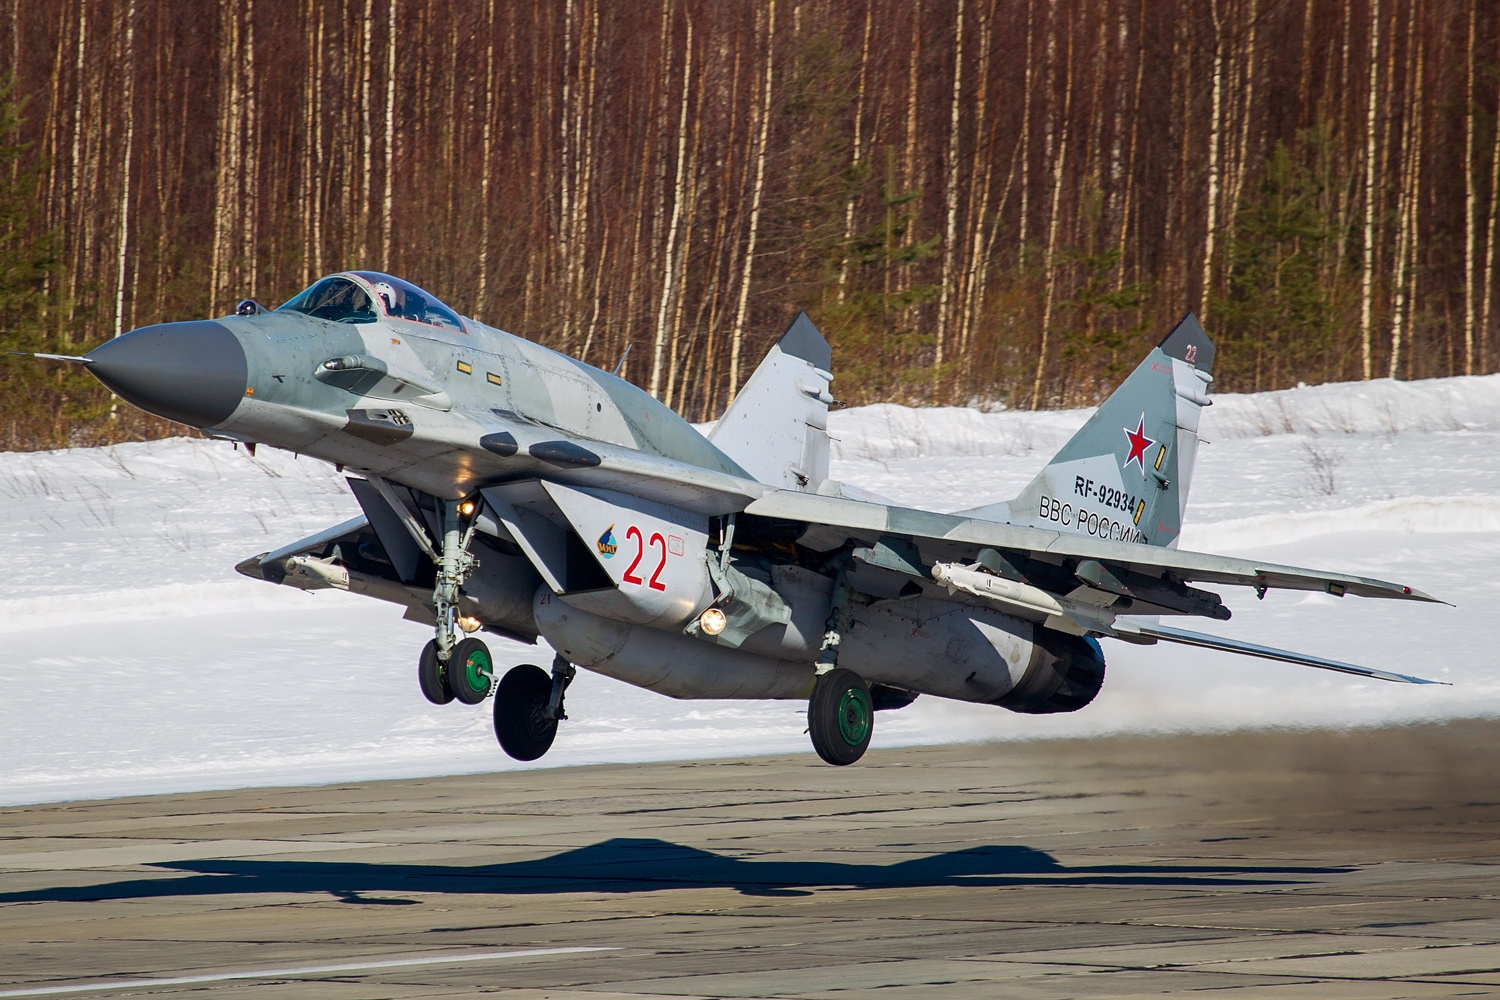 WP: Пожертвованные Киеву истребители МиГ-29 не дадут Украине превосходства в воздухе